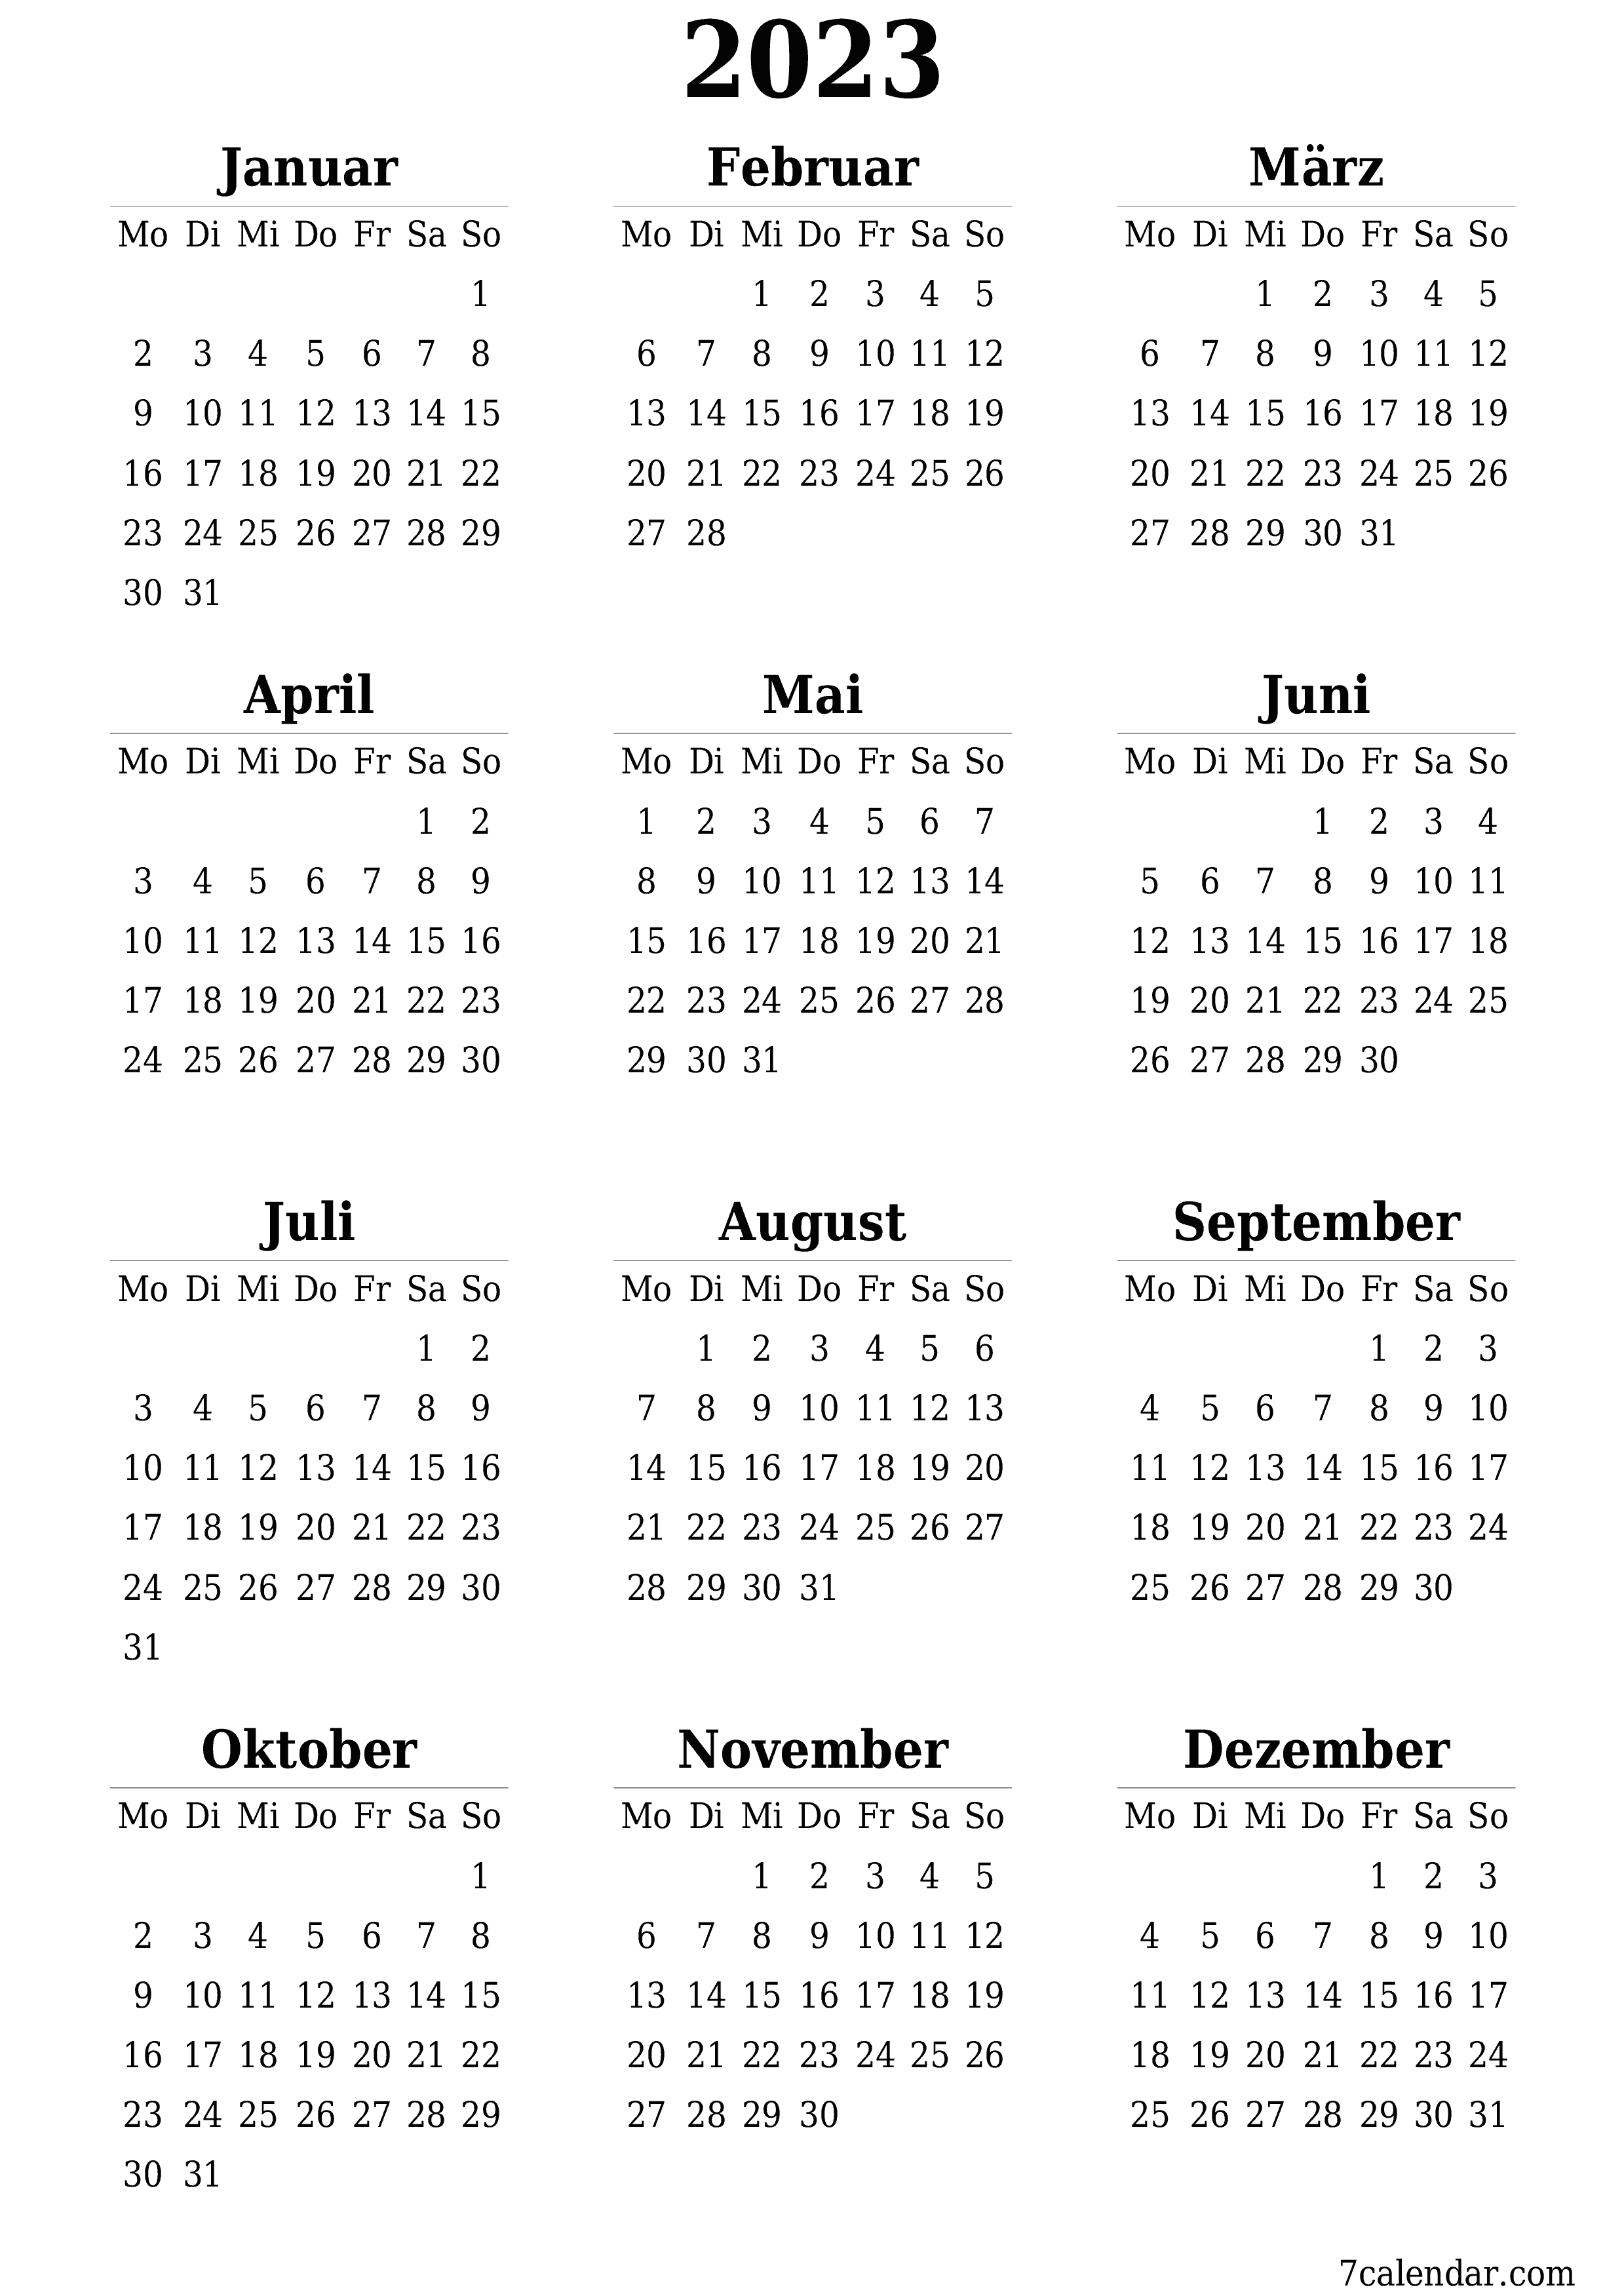 Leerer Jahreskalender für das Jahr 2023 speichern und als PDF PNG German - 7calendar.com drucken